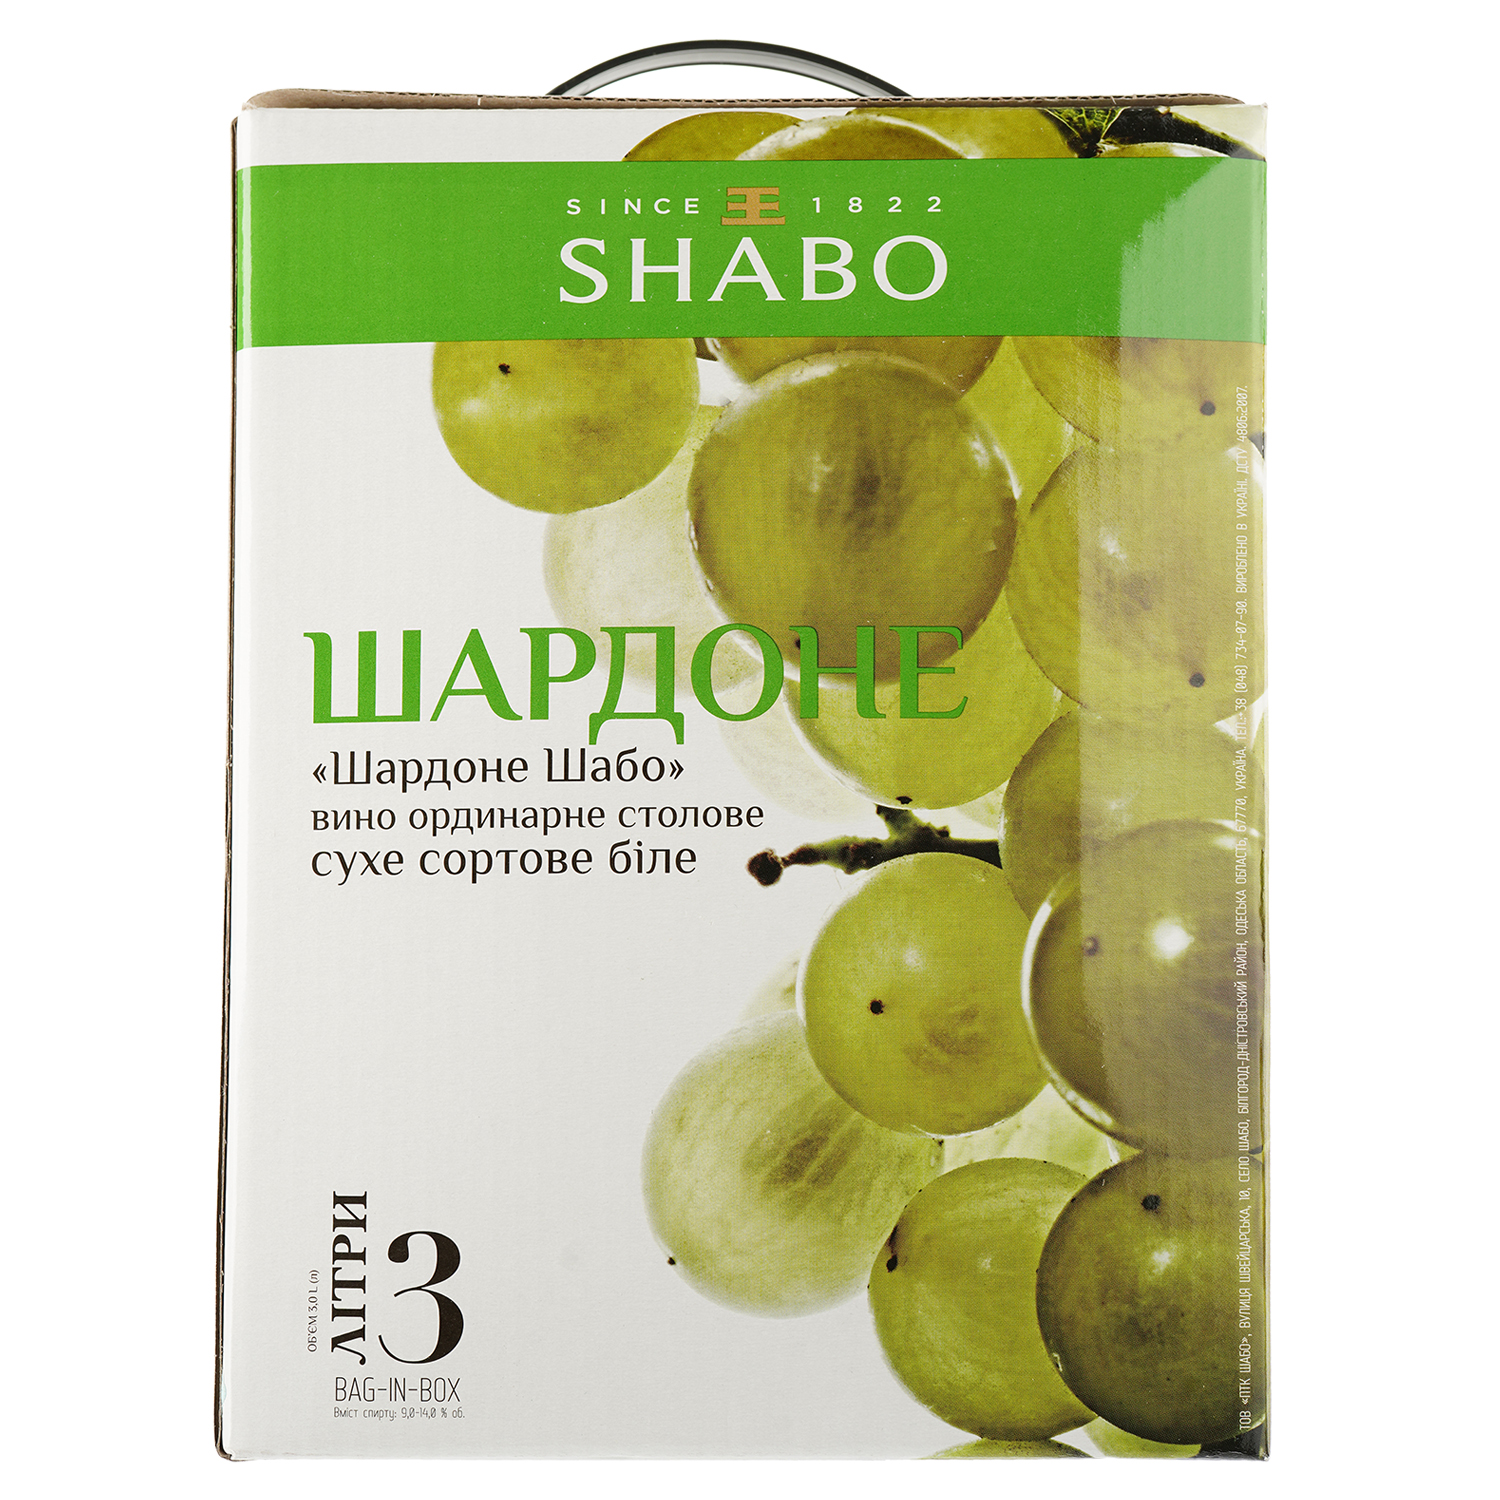 Вино Shabo Шардоне, белое, сухое, Bag-in-Box, 9,5-14%, 3 л - фото 2